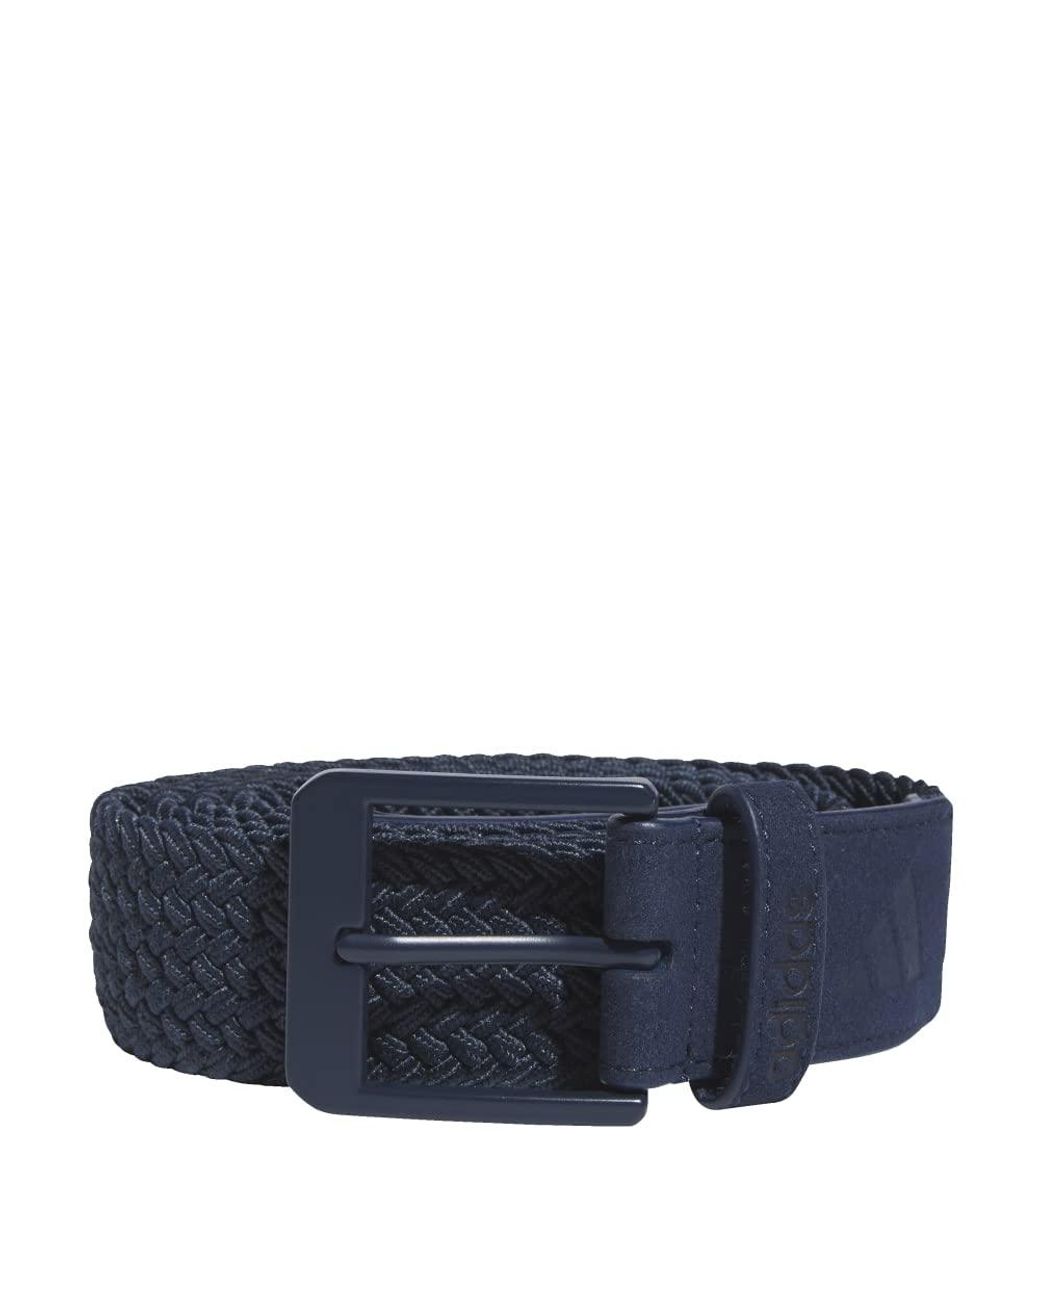 Buy Adidas Braided Weave Stretch Belt